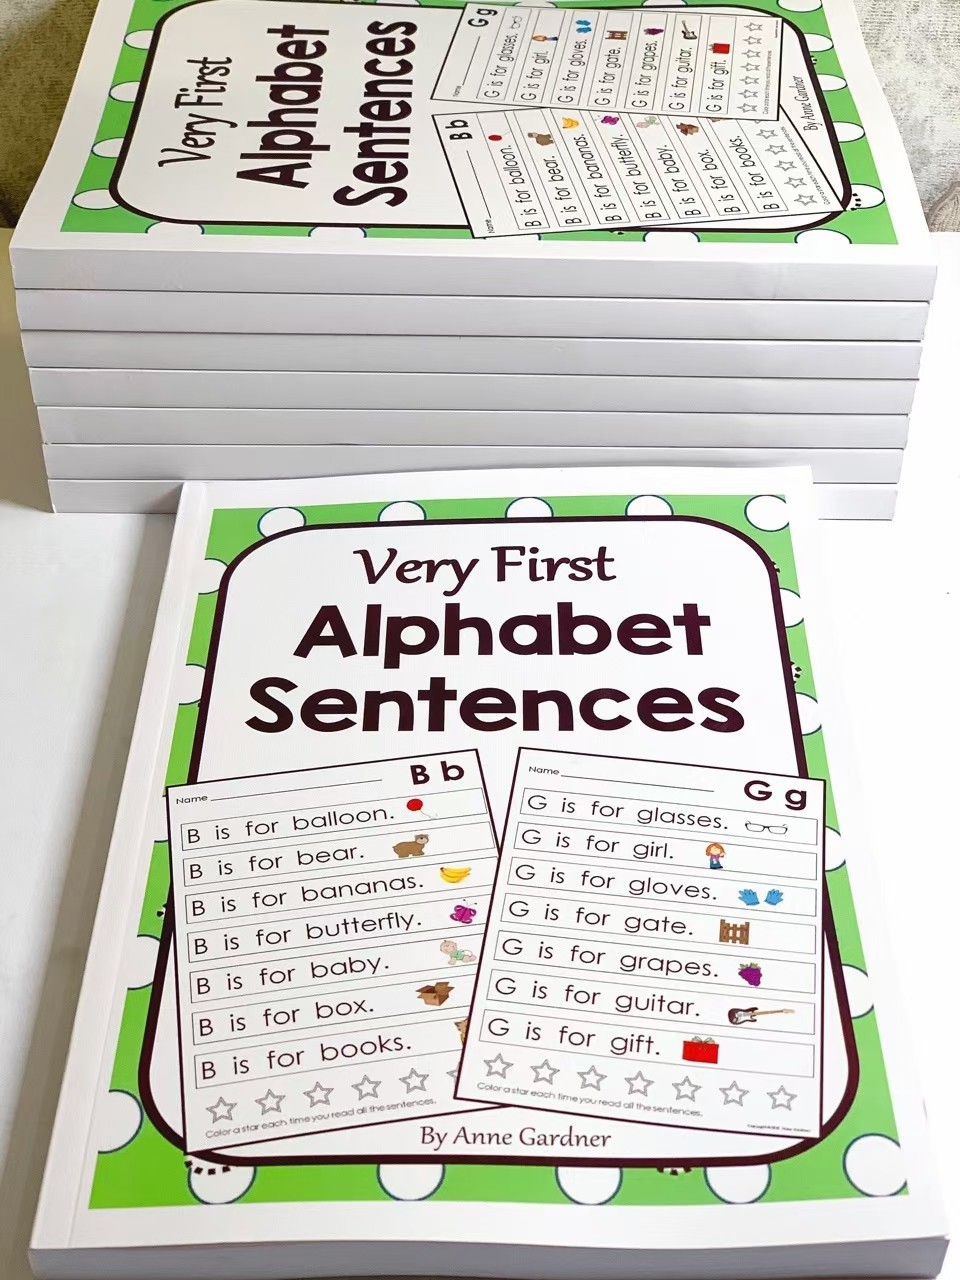 แบบฝึกทักษะภาษา Very First Alphabet Sentences